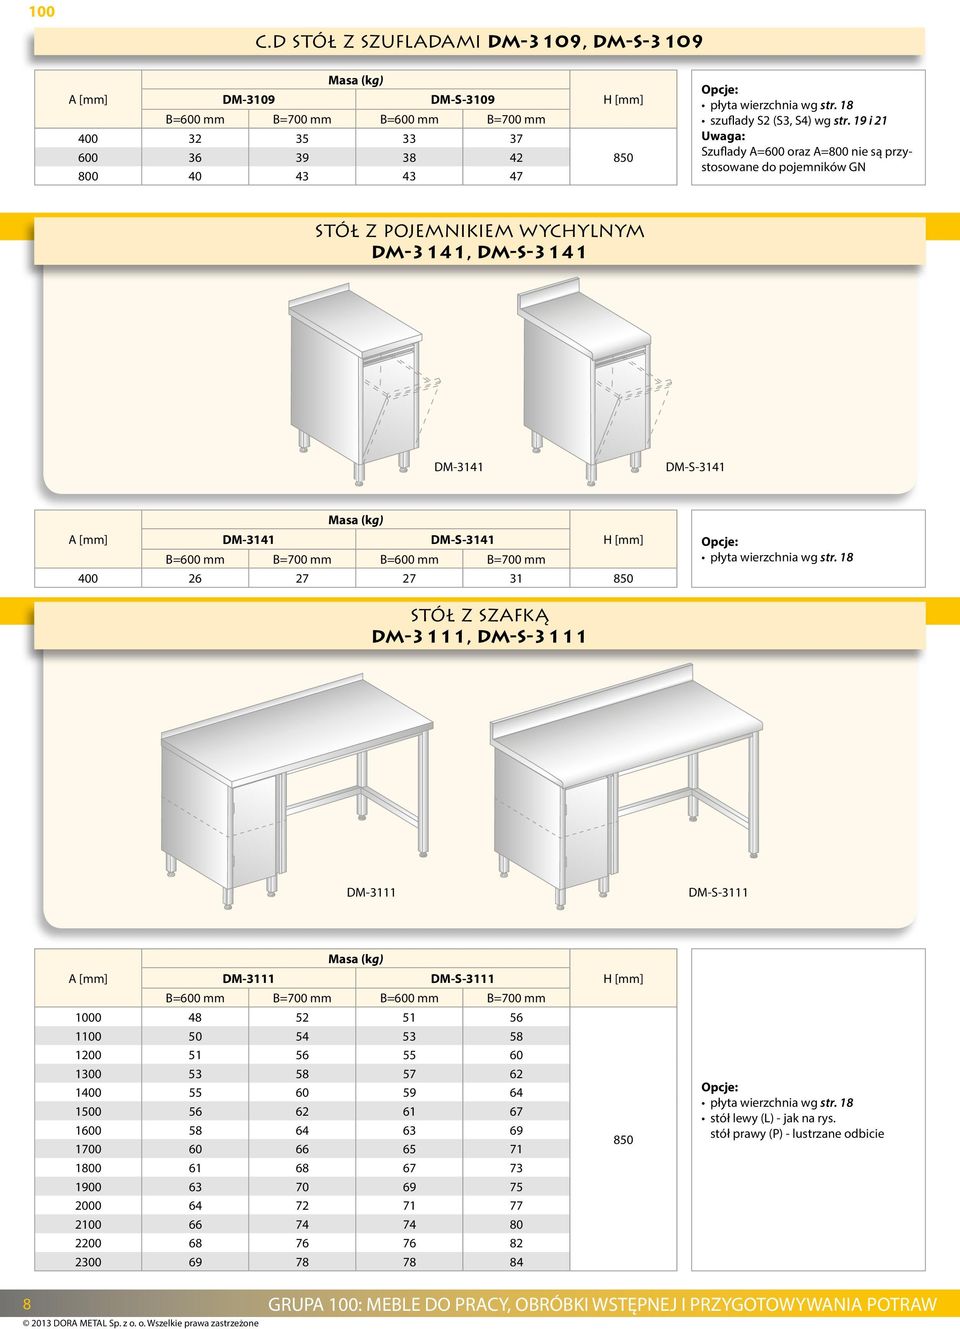 19 i 21 Uwaga: Szuflady A=600 oraz A=800 nie są przystosowane do pojemników GN stół z pojemnikiem wychylnym DM-3141, DM-S-3141 DM-3141 DM-S-3141 DM-3141 DM-S-3141 B=600 mm B=700 mm B=600 mm B=700 mm